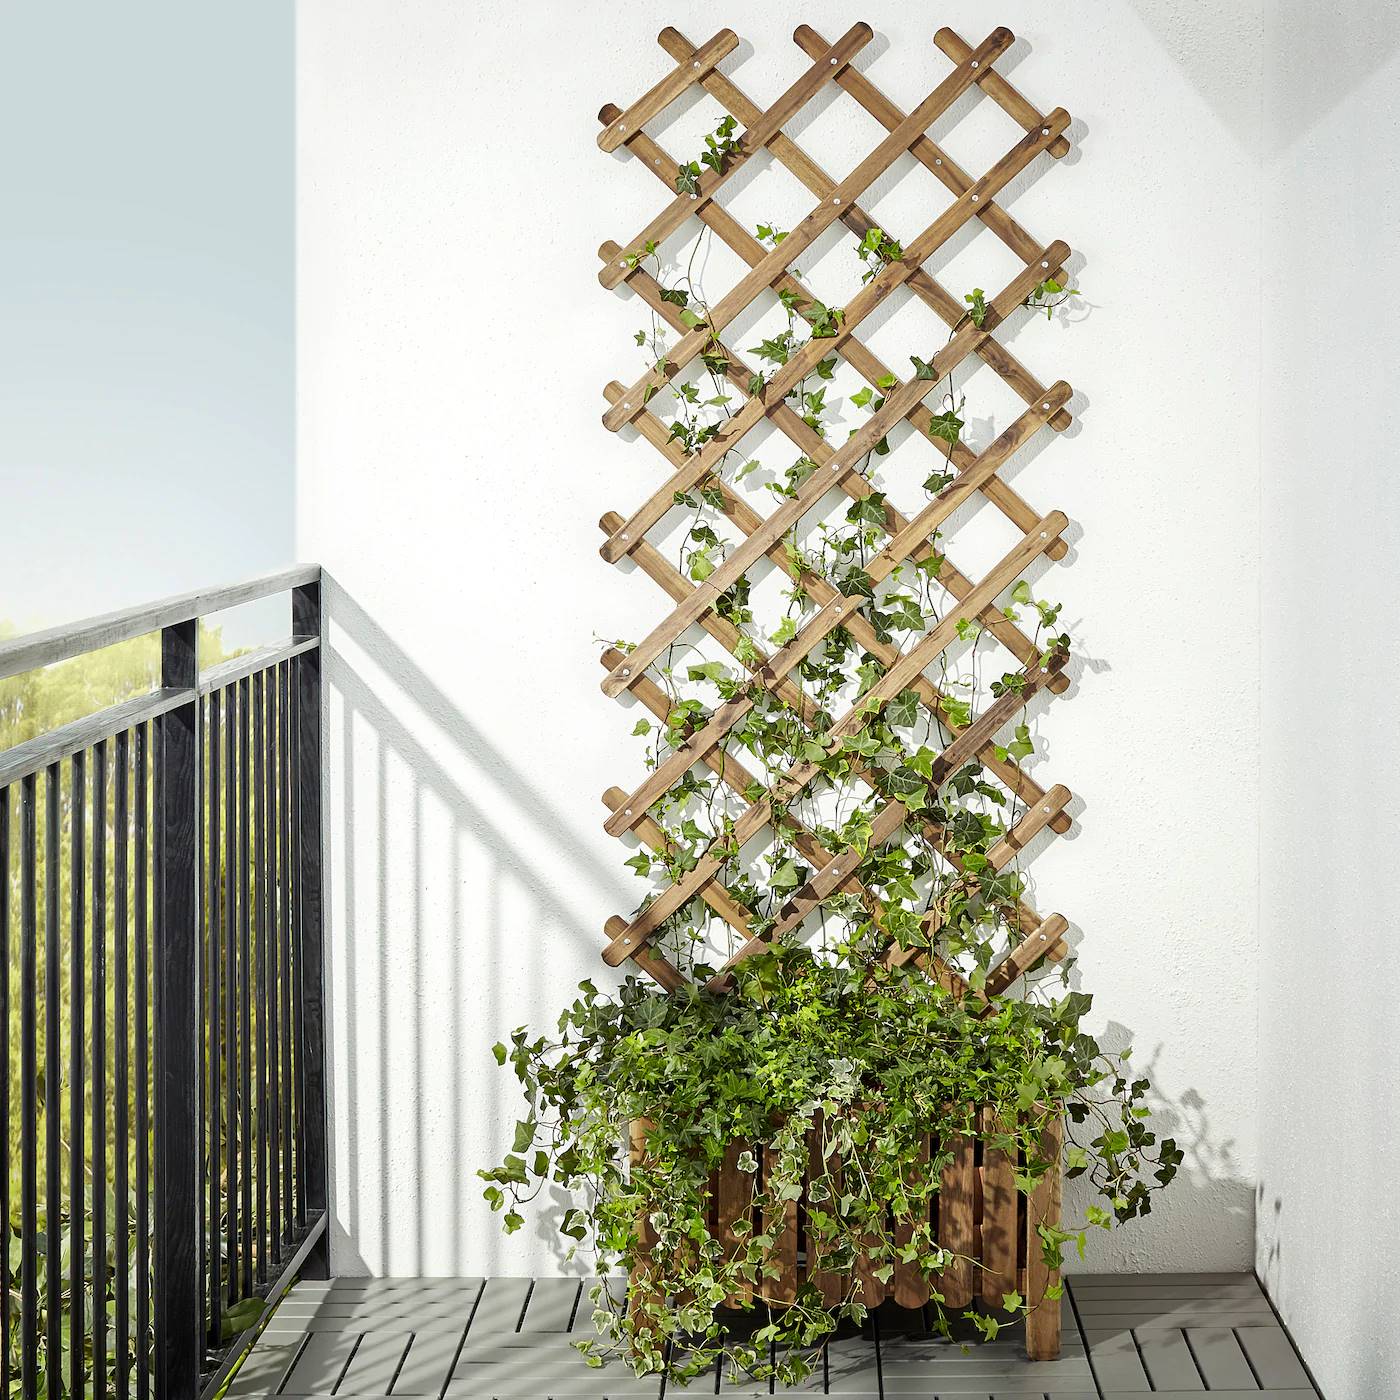 Honorable Minúsculo Mercurio 15 ideas para decorar con jardines verticales